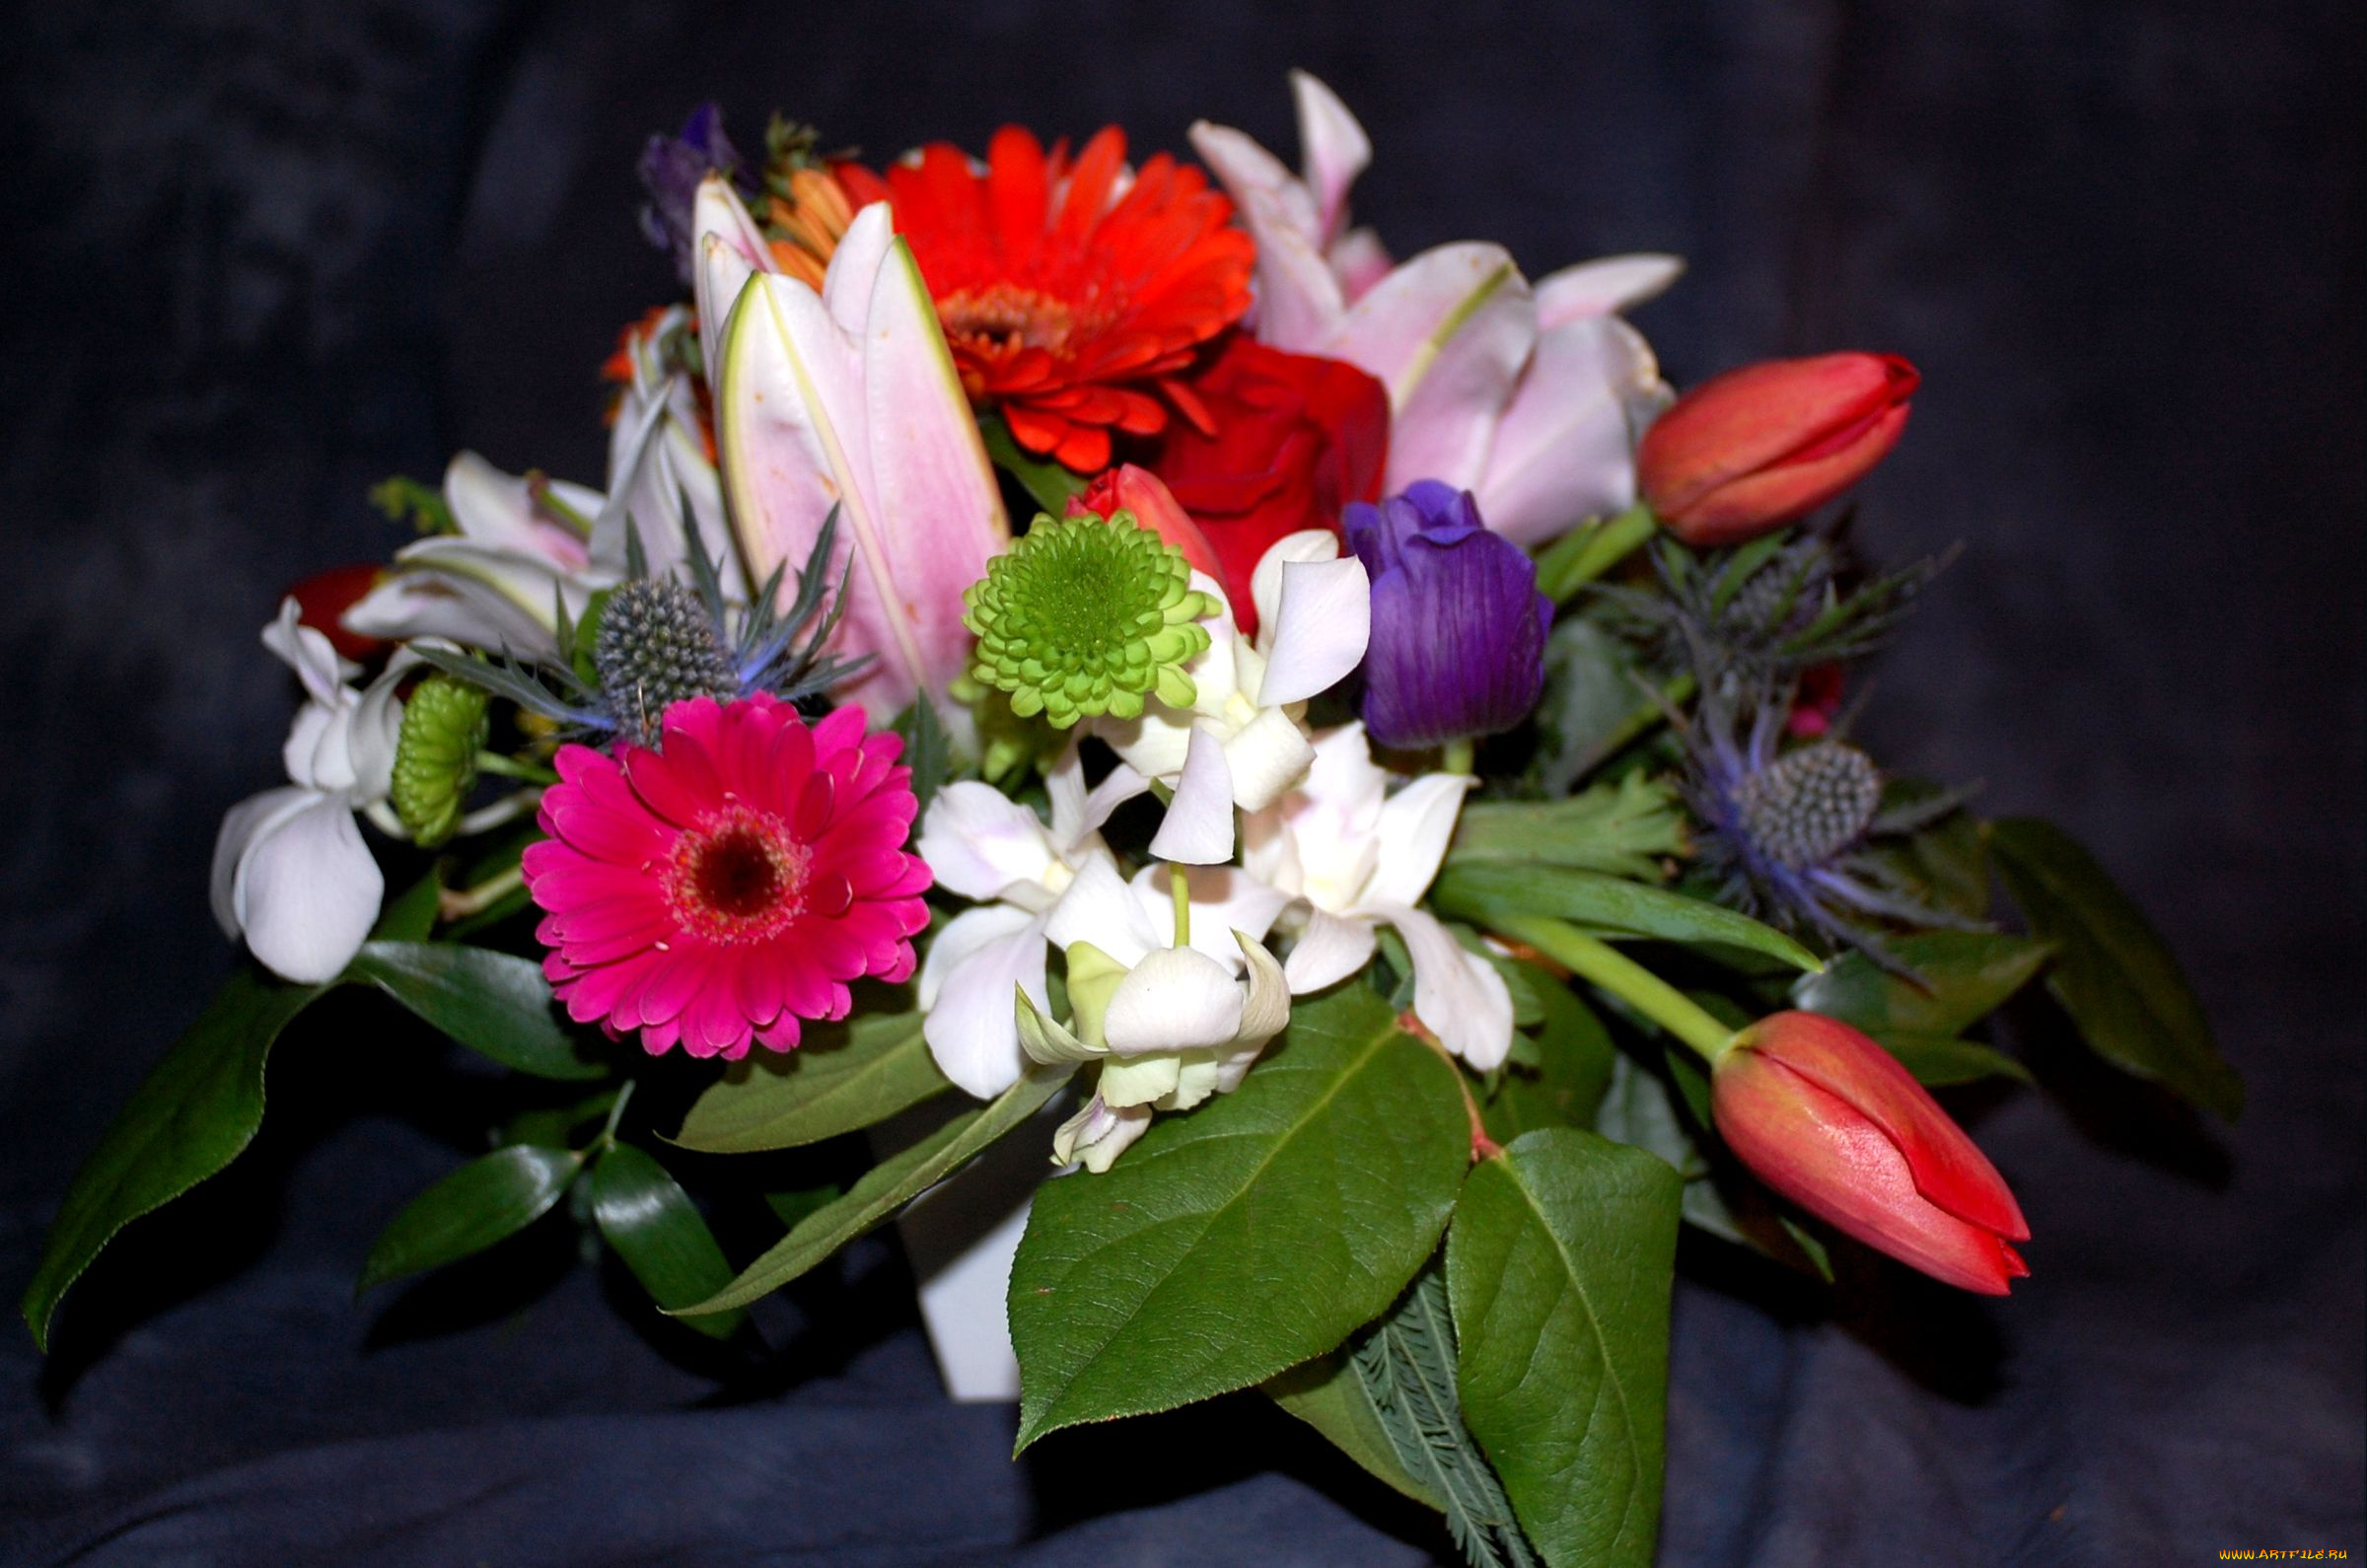 цветы, букеты, композиции, герберы, тюльпаны, лилии, эустома, хризантема